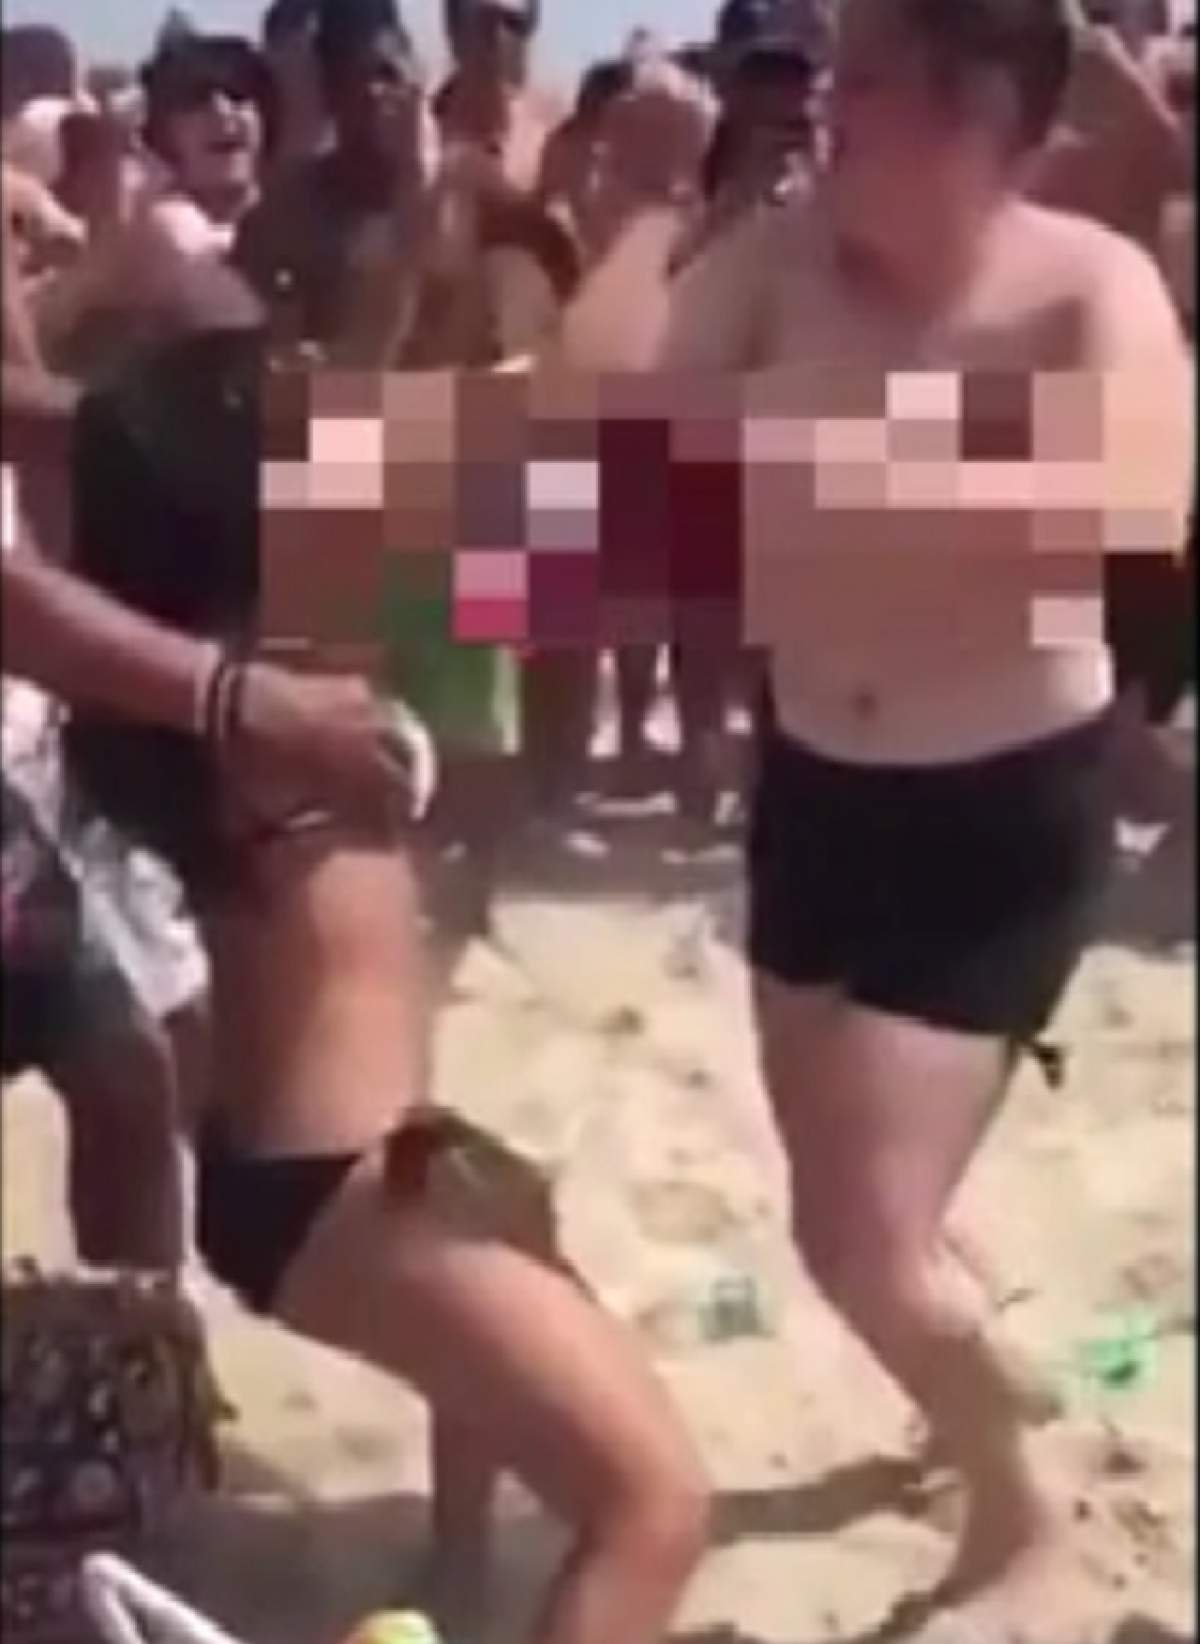 VIDEO / Două fete s-au luat la bătaie pe plajă. Uneia i s-a desprins sutienul, a rămas în sânii goi, dar a continuat. Totul a fost filmat!